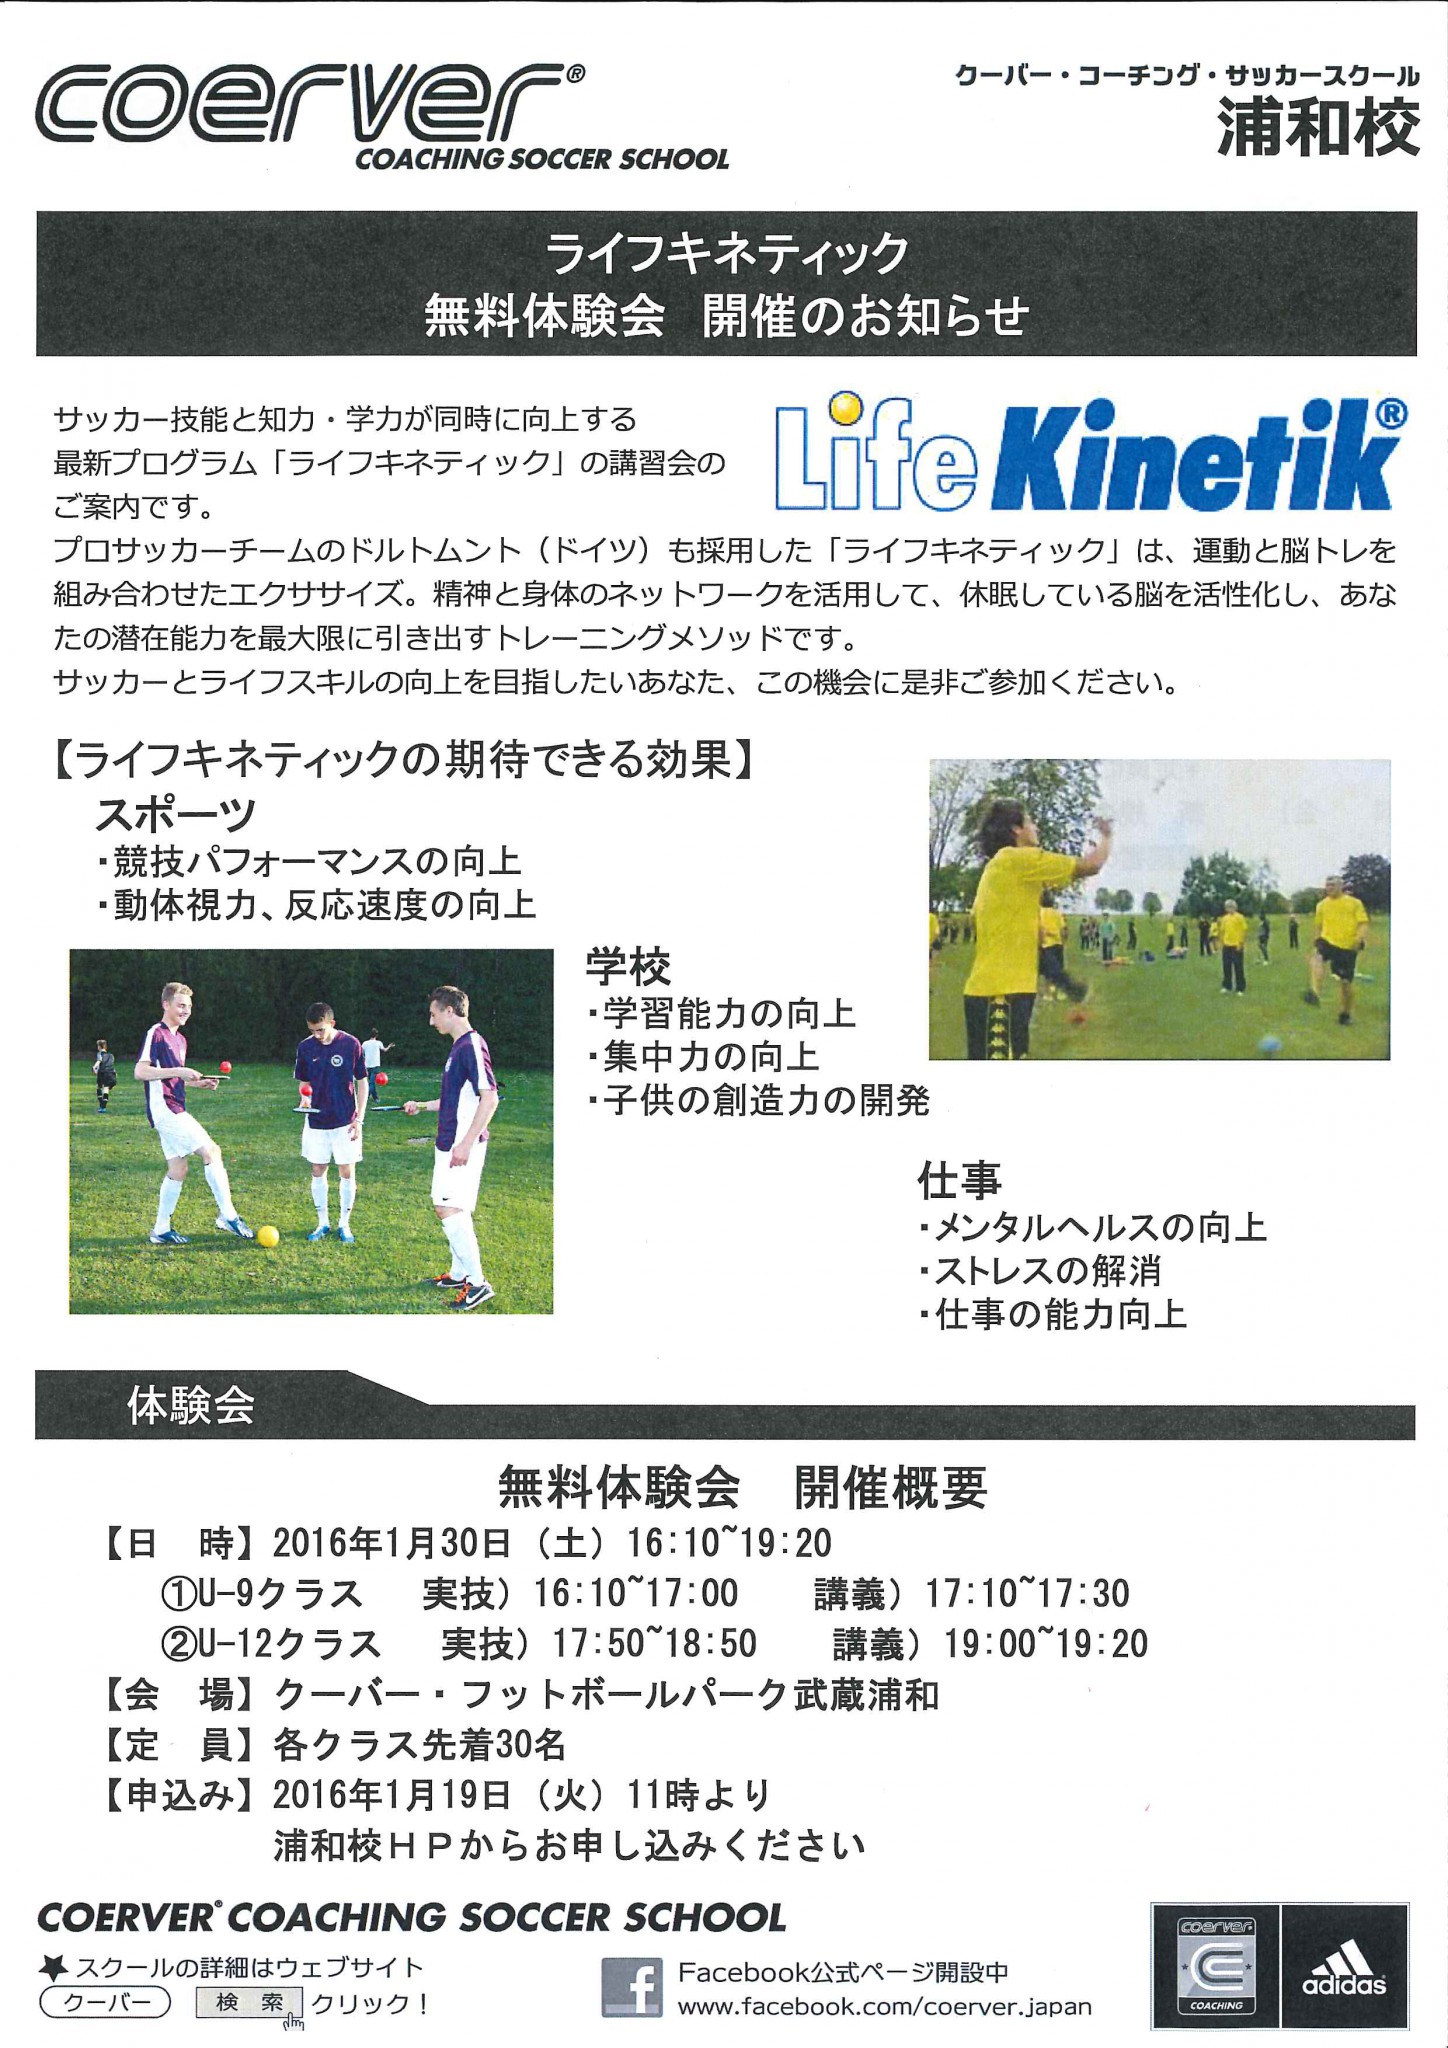 1月30日 土 クーバー コーチング サッカースクール 浦和校 にて U 9 U 12のライフキネティック体験教室を開催します ライフキネティック